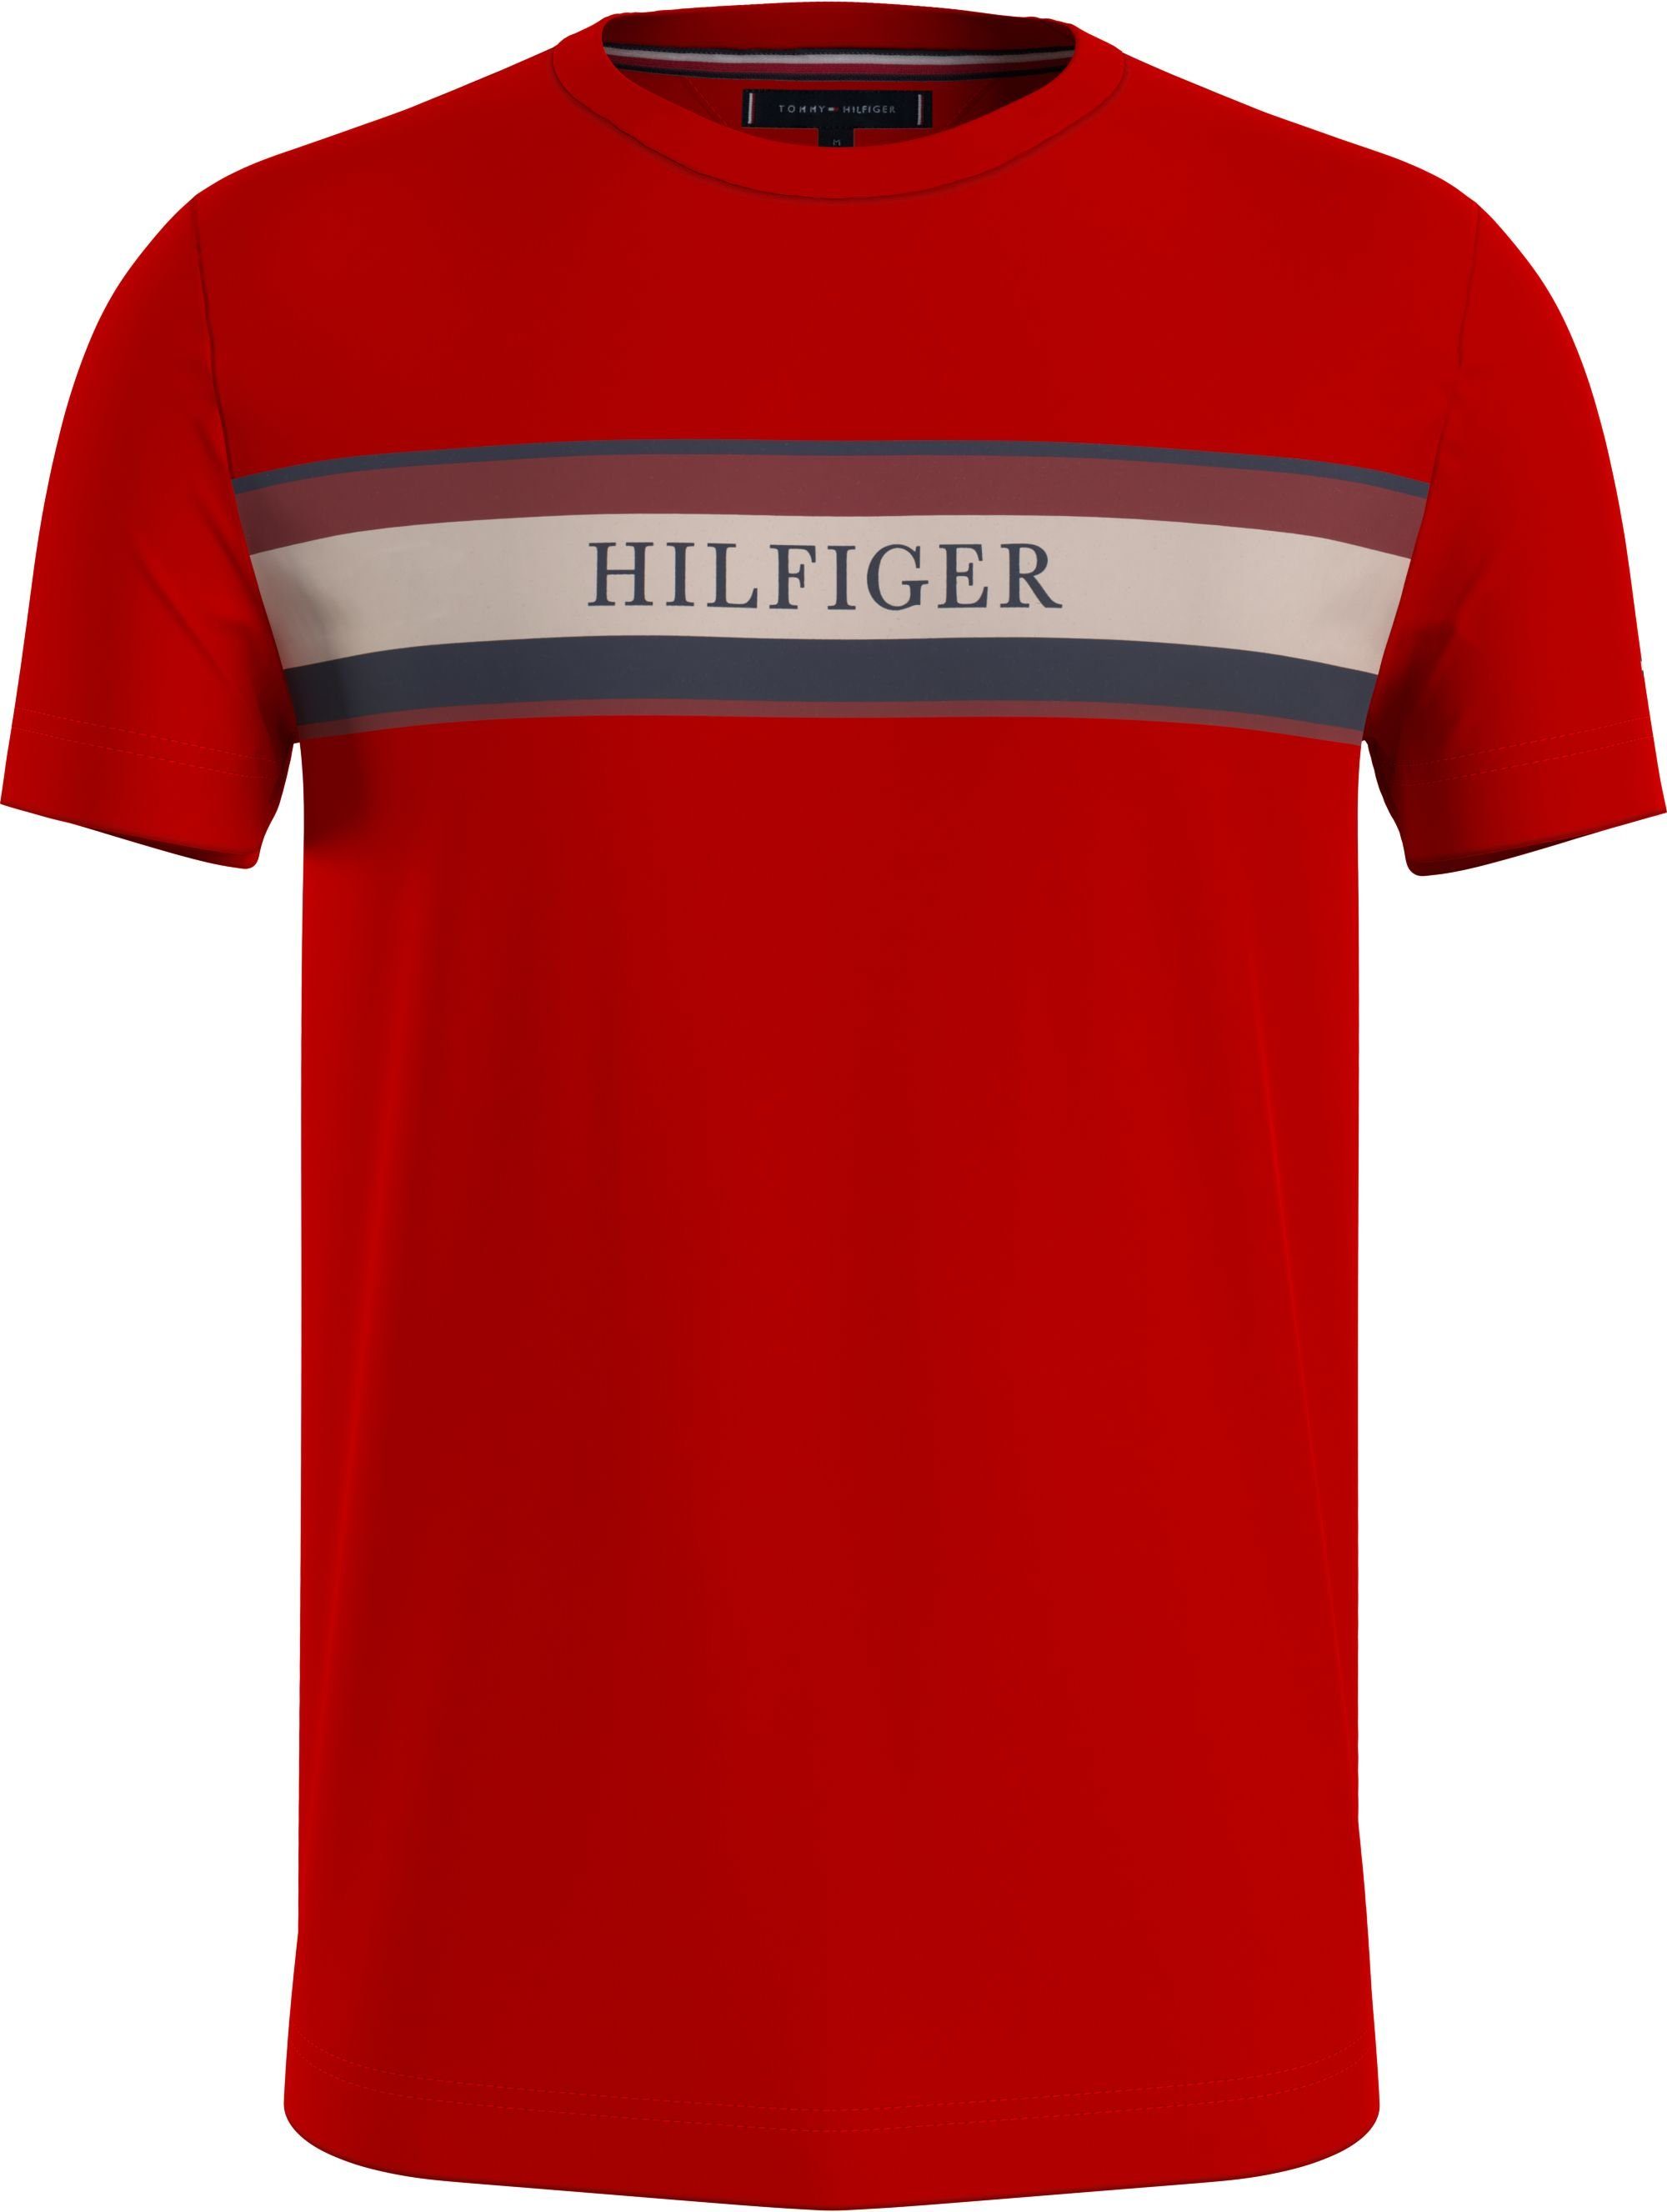 Tommy Hilfiger mit HILFIGER STRIPE CHEST auf rot Brust T-Shirt TEE der Streifenprint